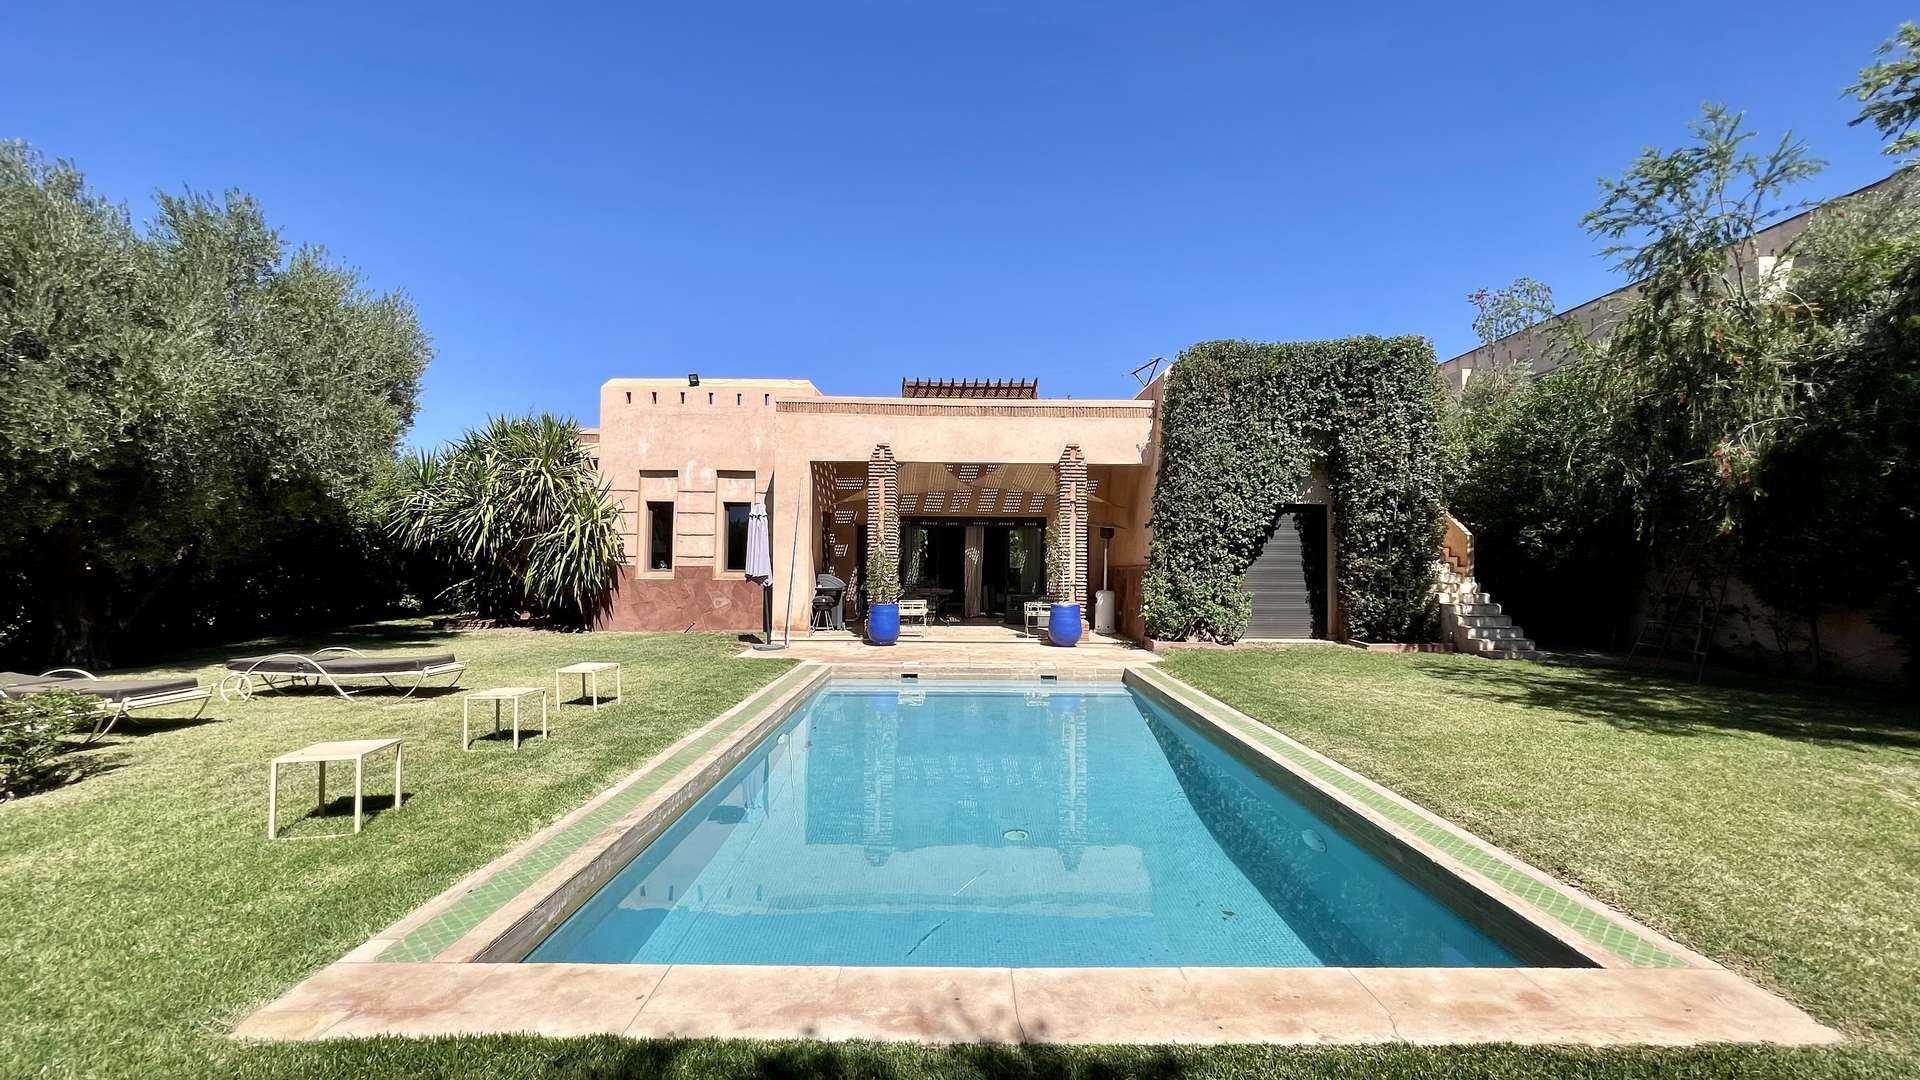 Location de vacances,Villa,Villa isolée 3 chambres à coucher de plain-pieds sur la route de Fès à 20 min. du centre,Marrakech,Route de Fès